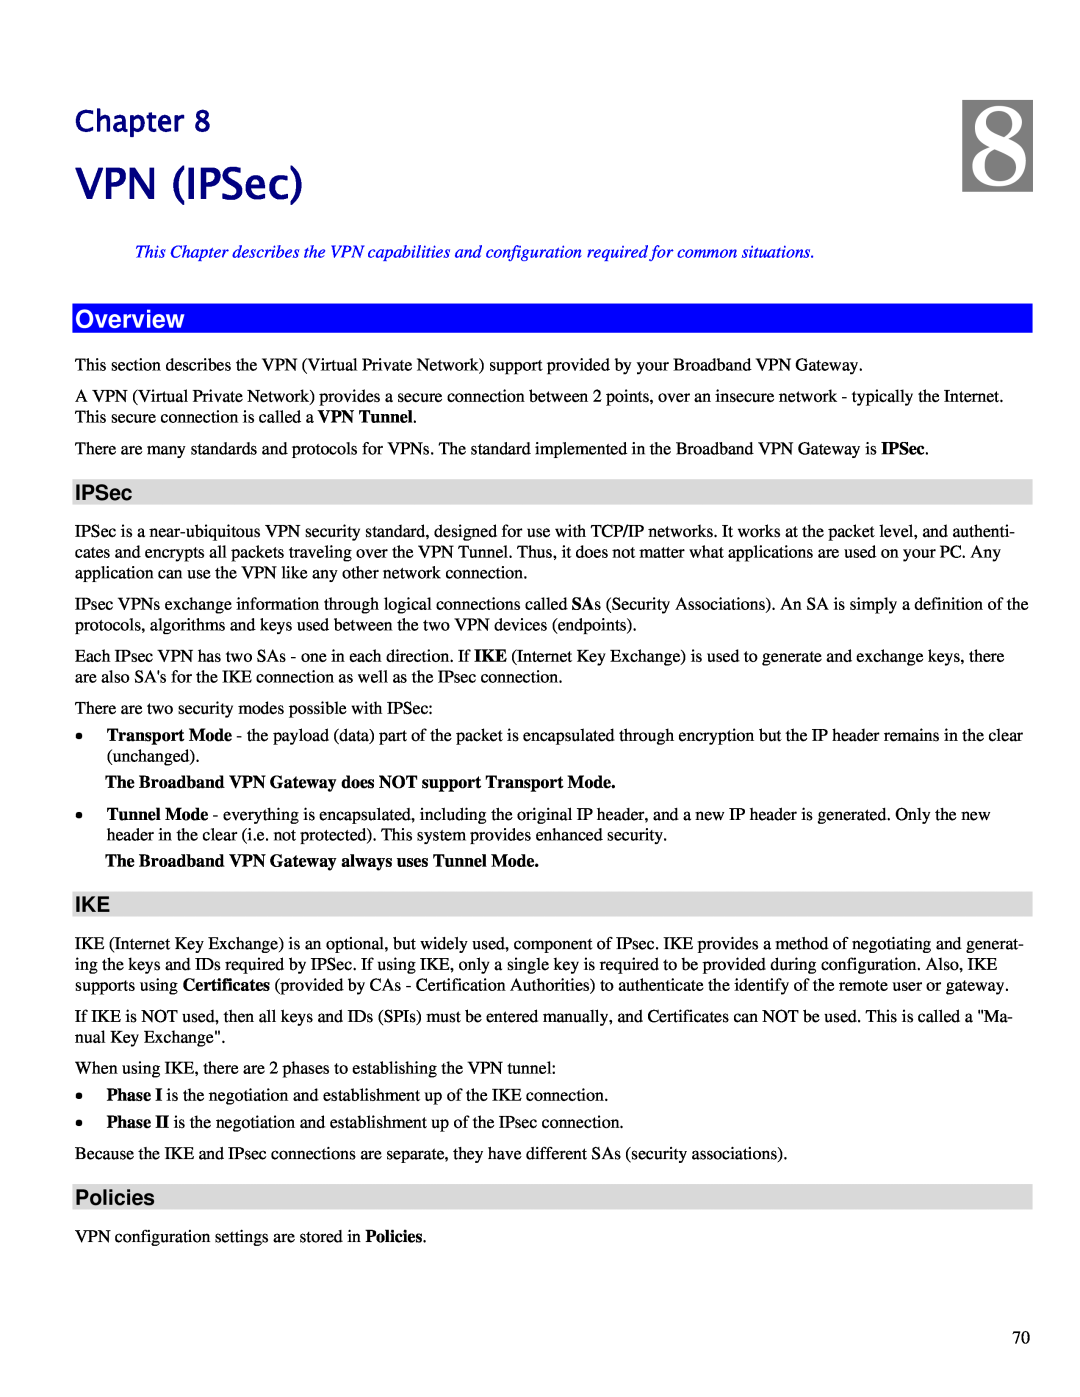 TRENDnet TW100-BRV324 manual VPN IPSec, Policies, Chapter, Overview 